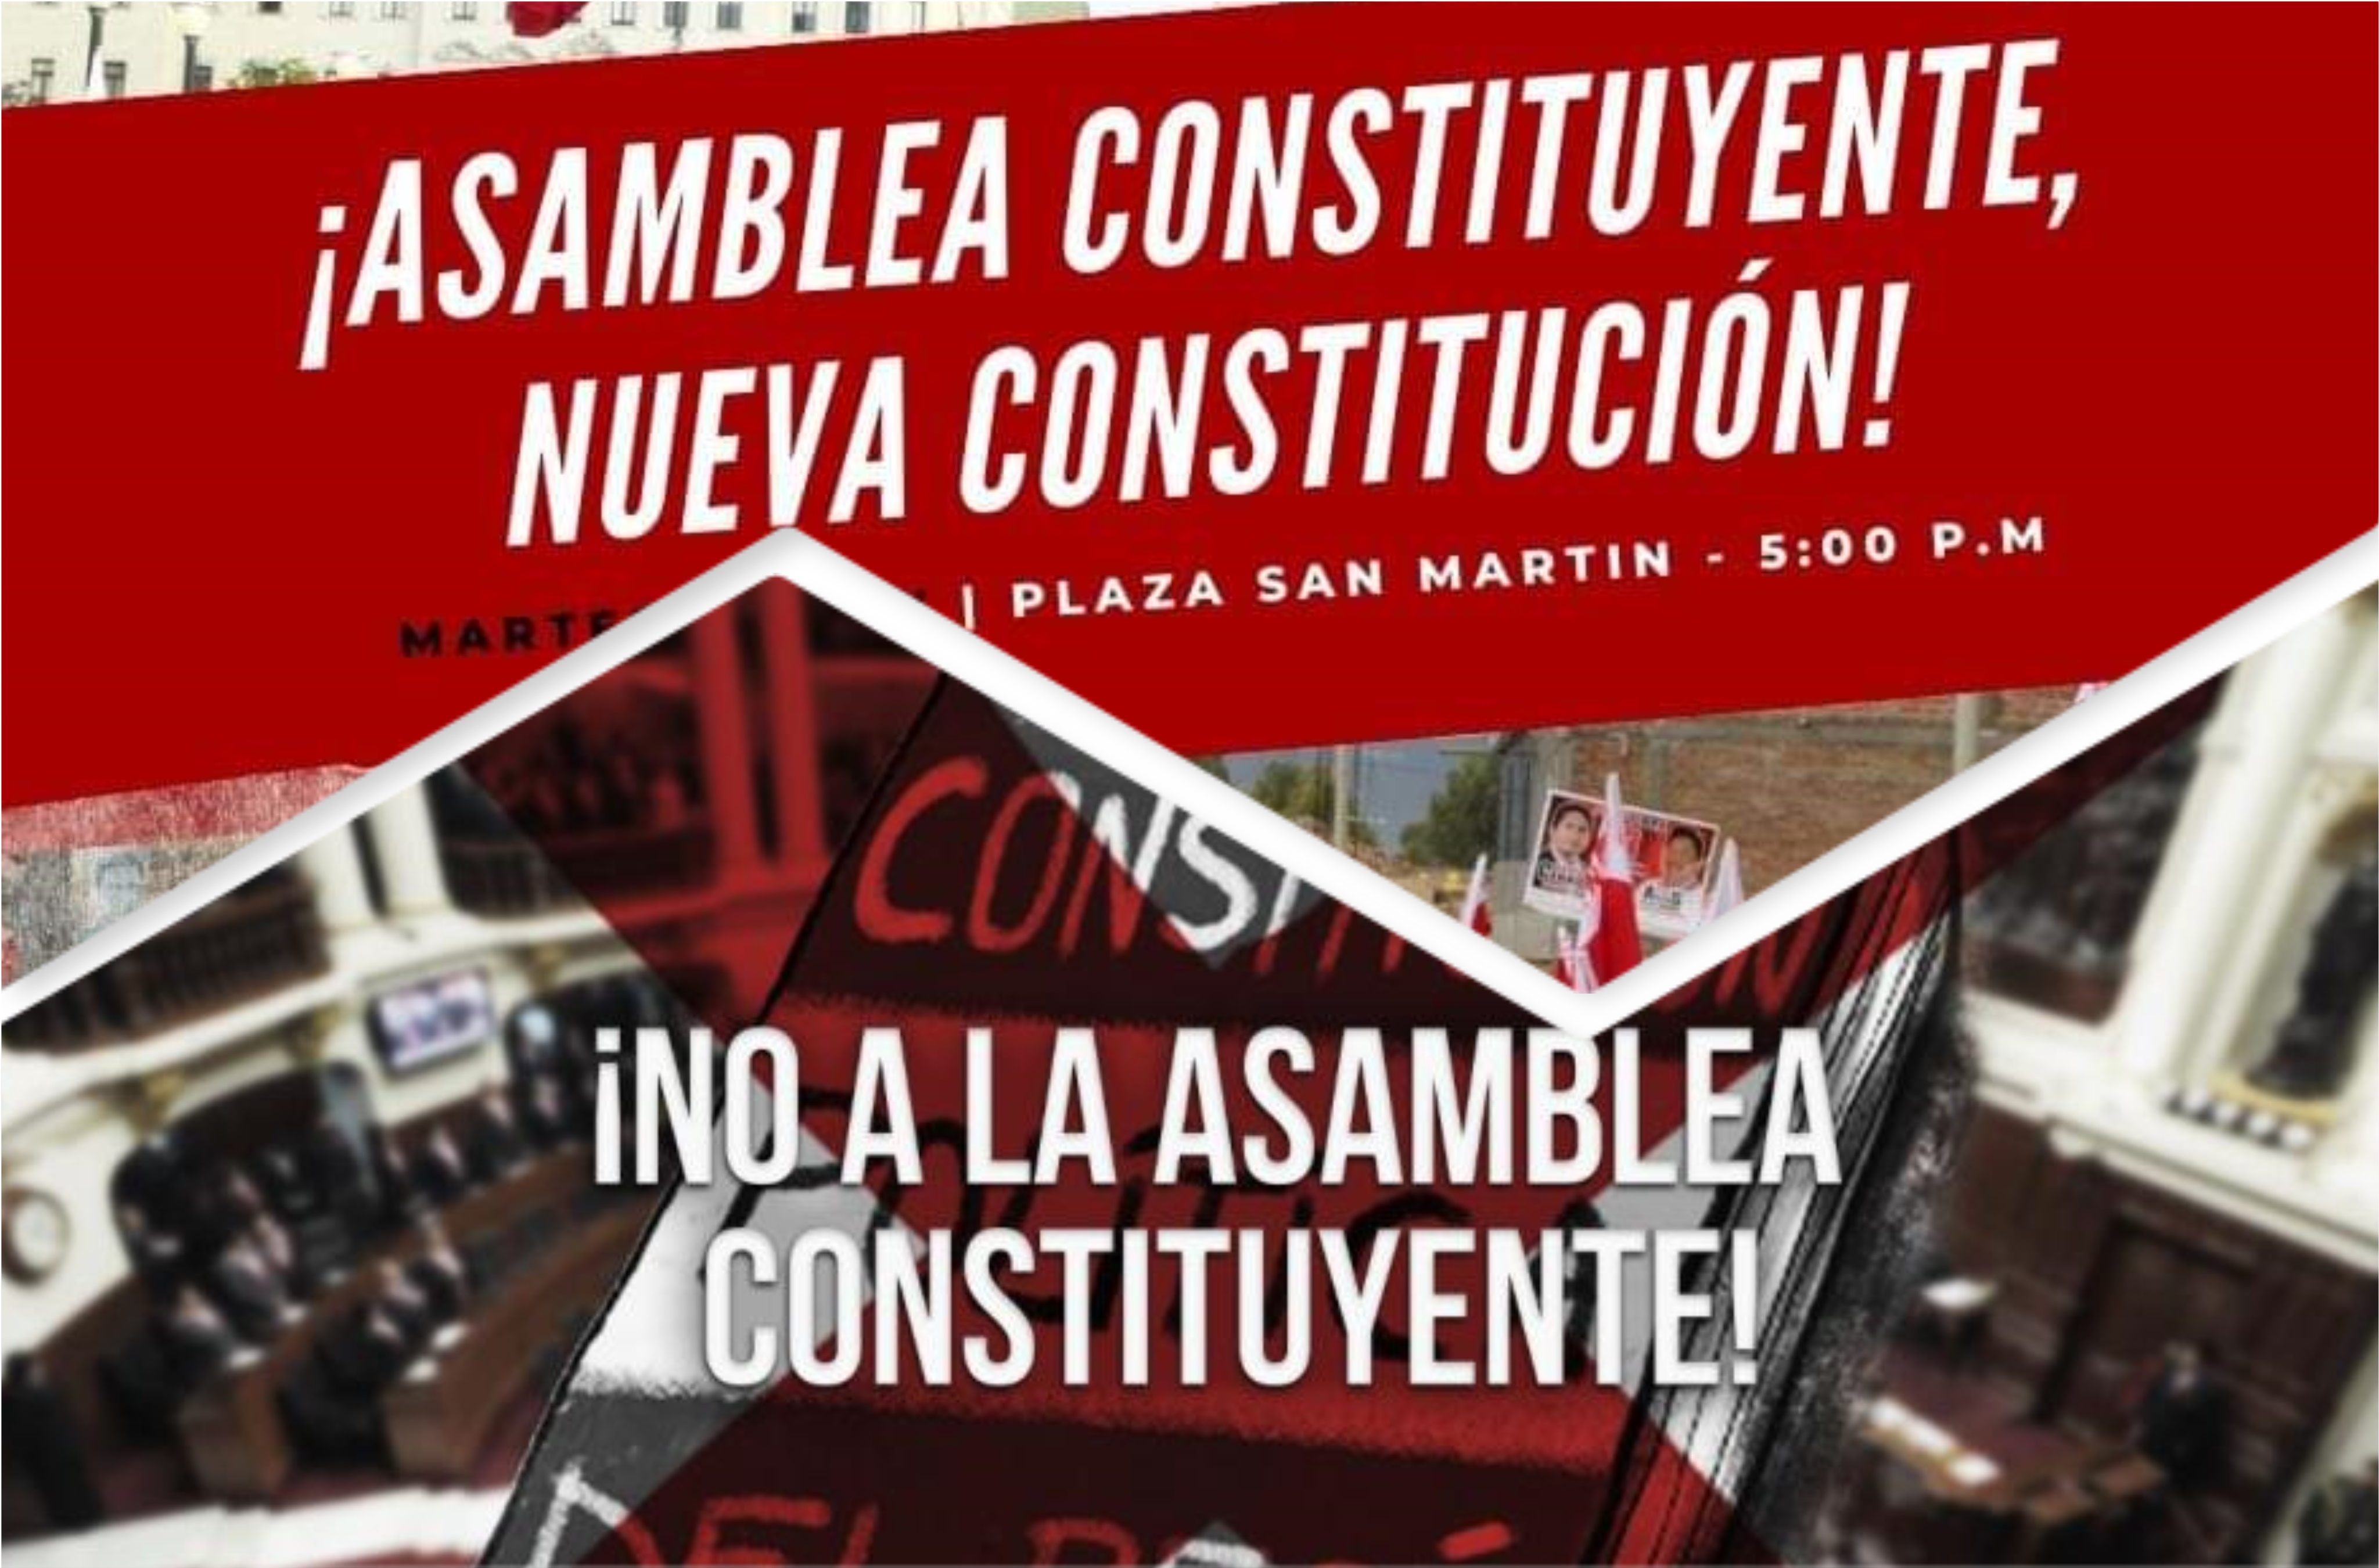 La Asamblea Constituyente Y La Constitución Política Del Perú De 1993 En Busca De Alternativas 3720